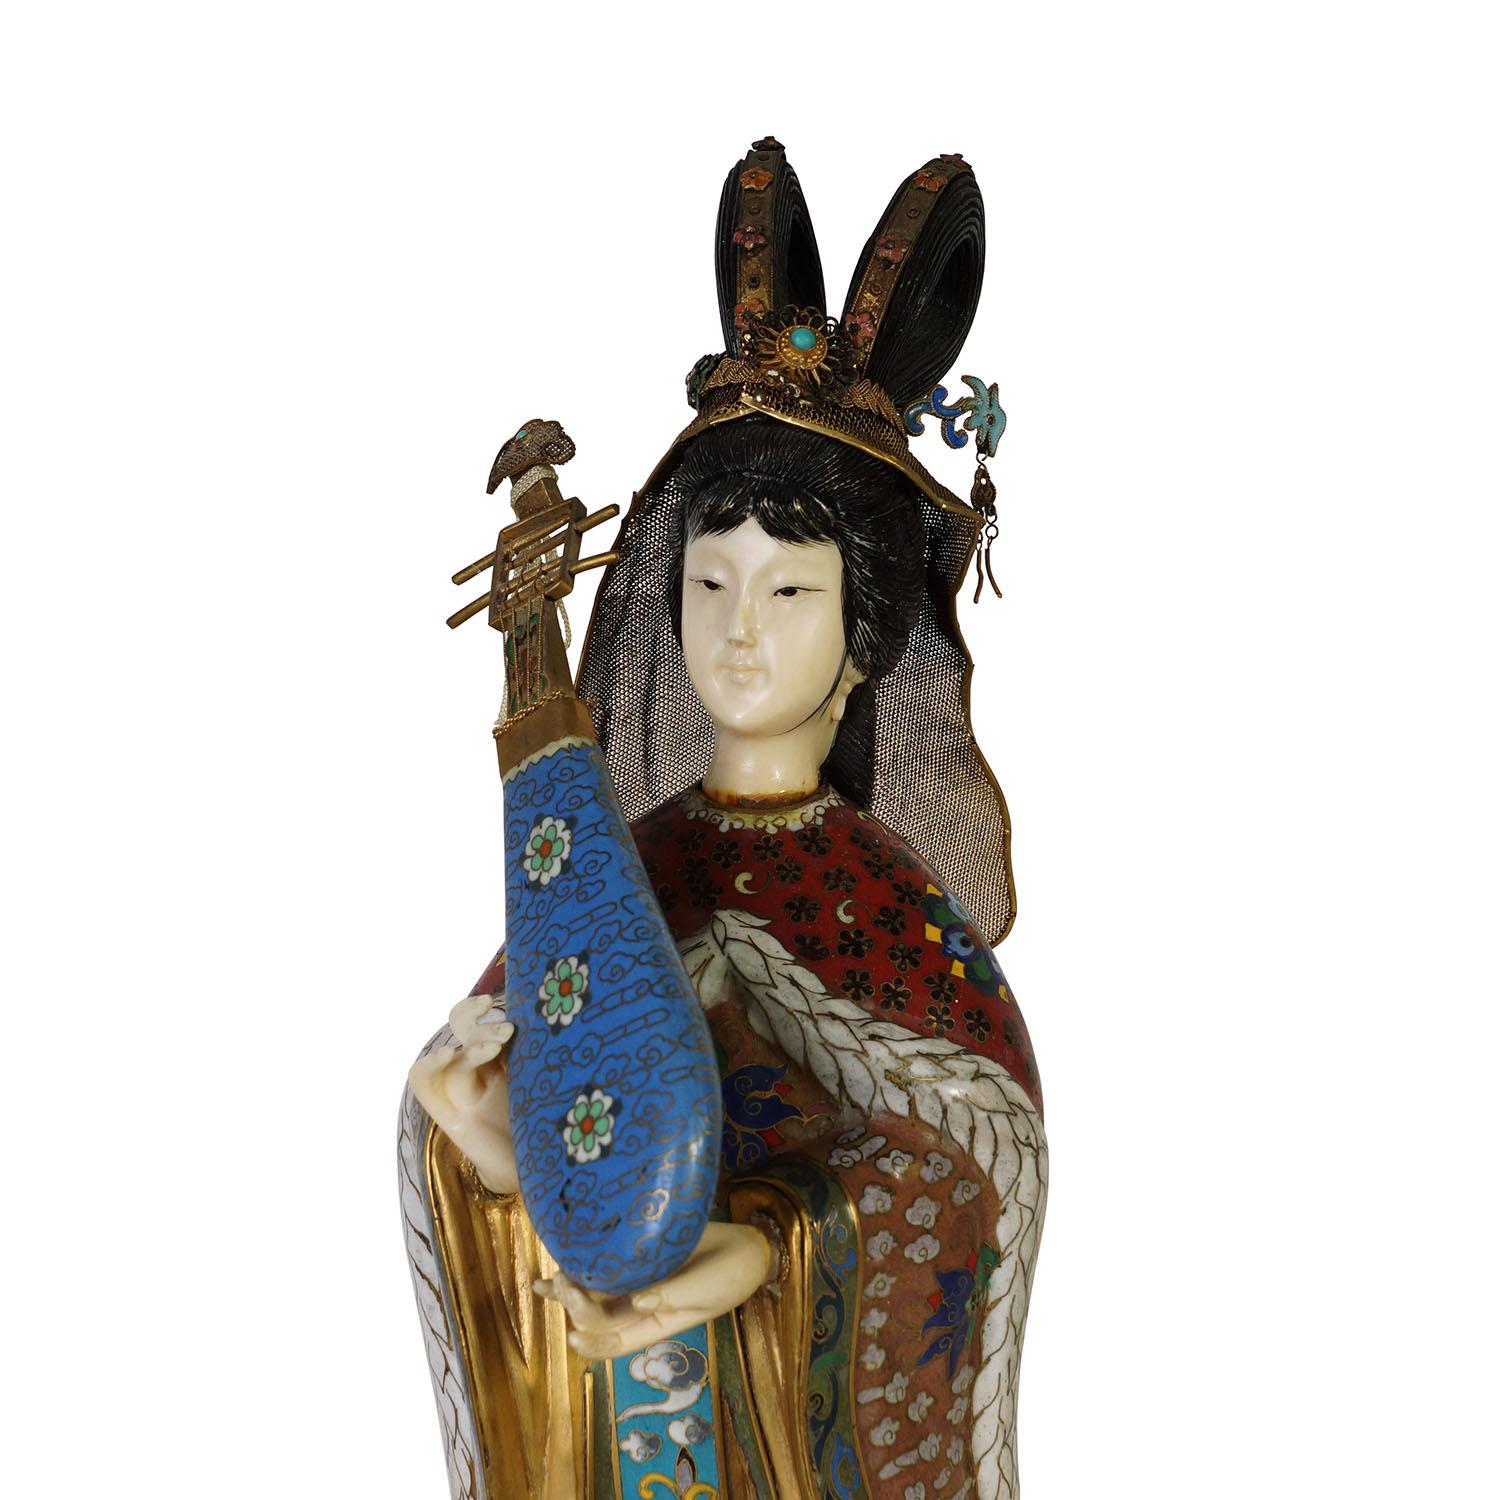 Regardez cette magnifique figurine de beauté chinoise ancienne en cloisonné. Il a été fabriqué à la main en cloisonné d'or et de cuivre. Cette beauté sur pied est recouverte d'œuvres d'art cloisonnées très détaillées, avec un instrument de musique